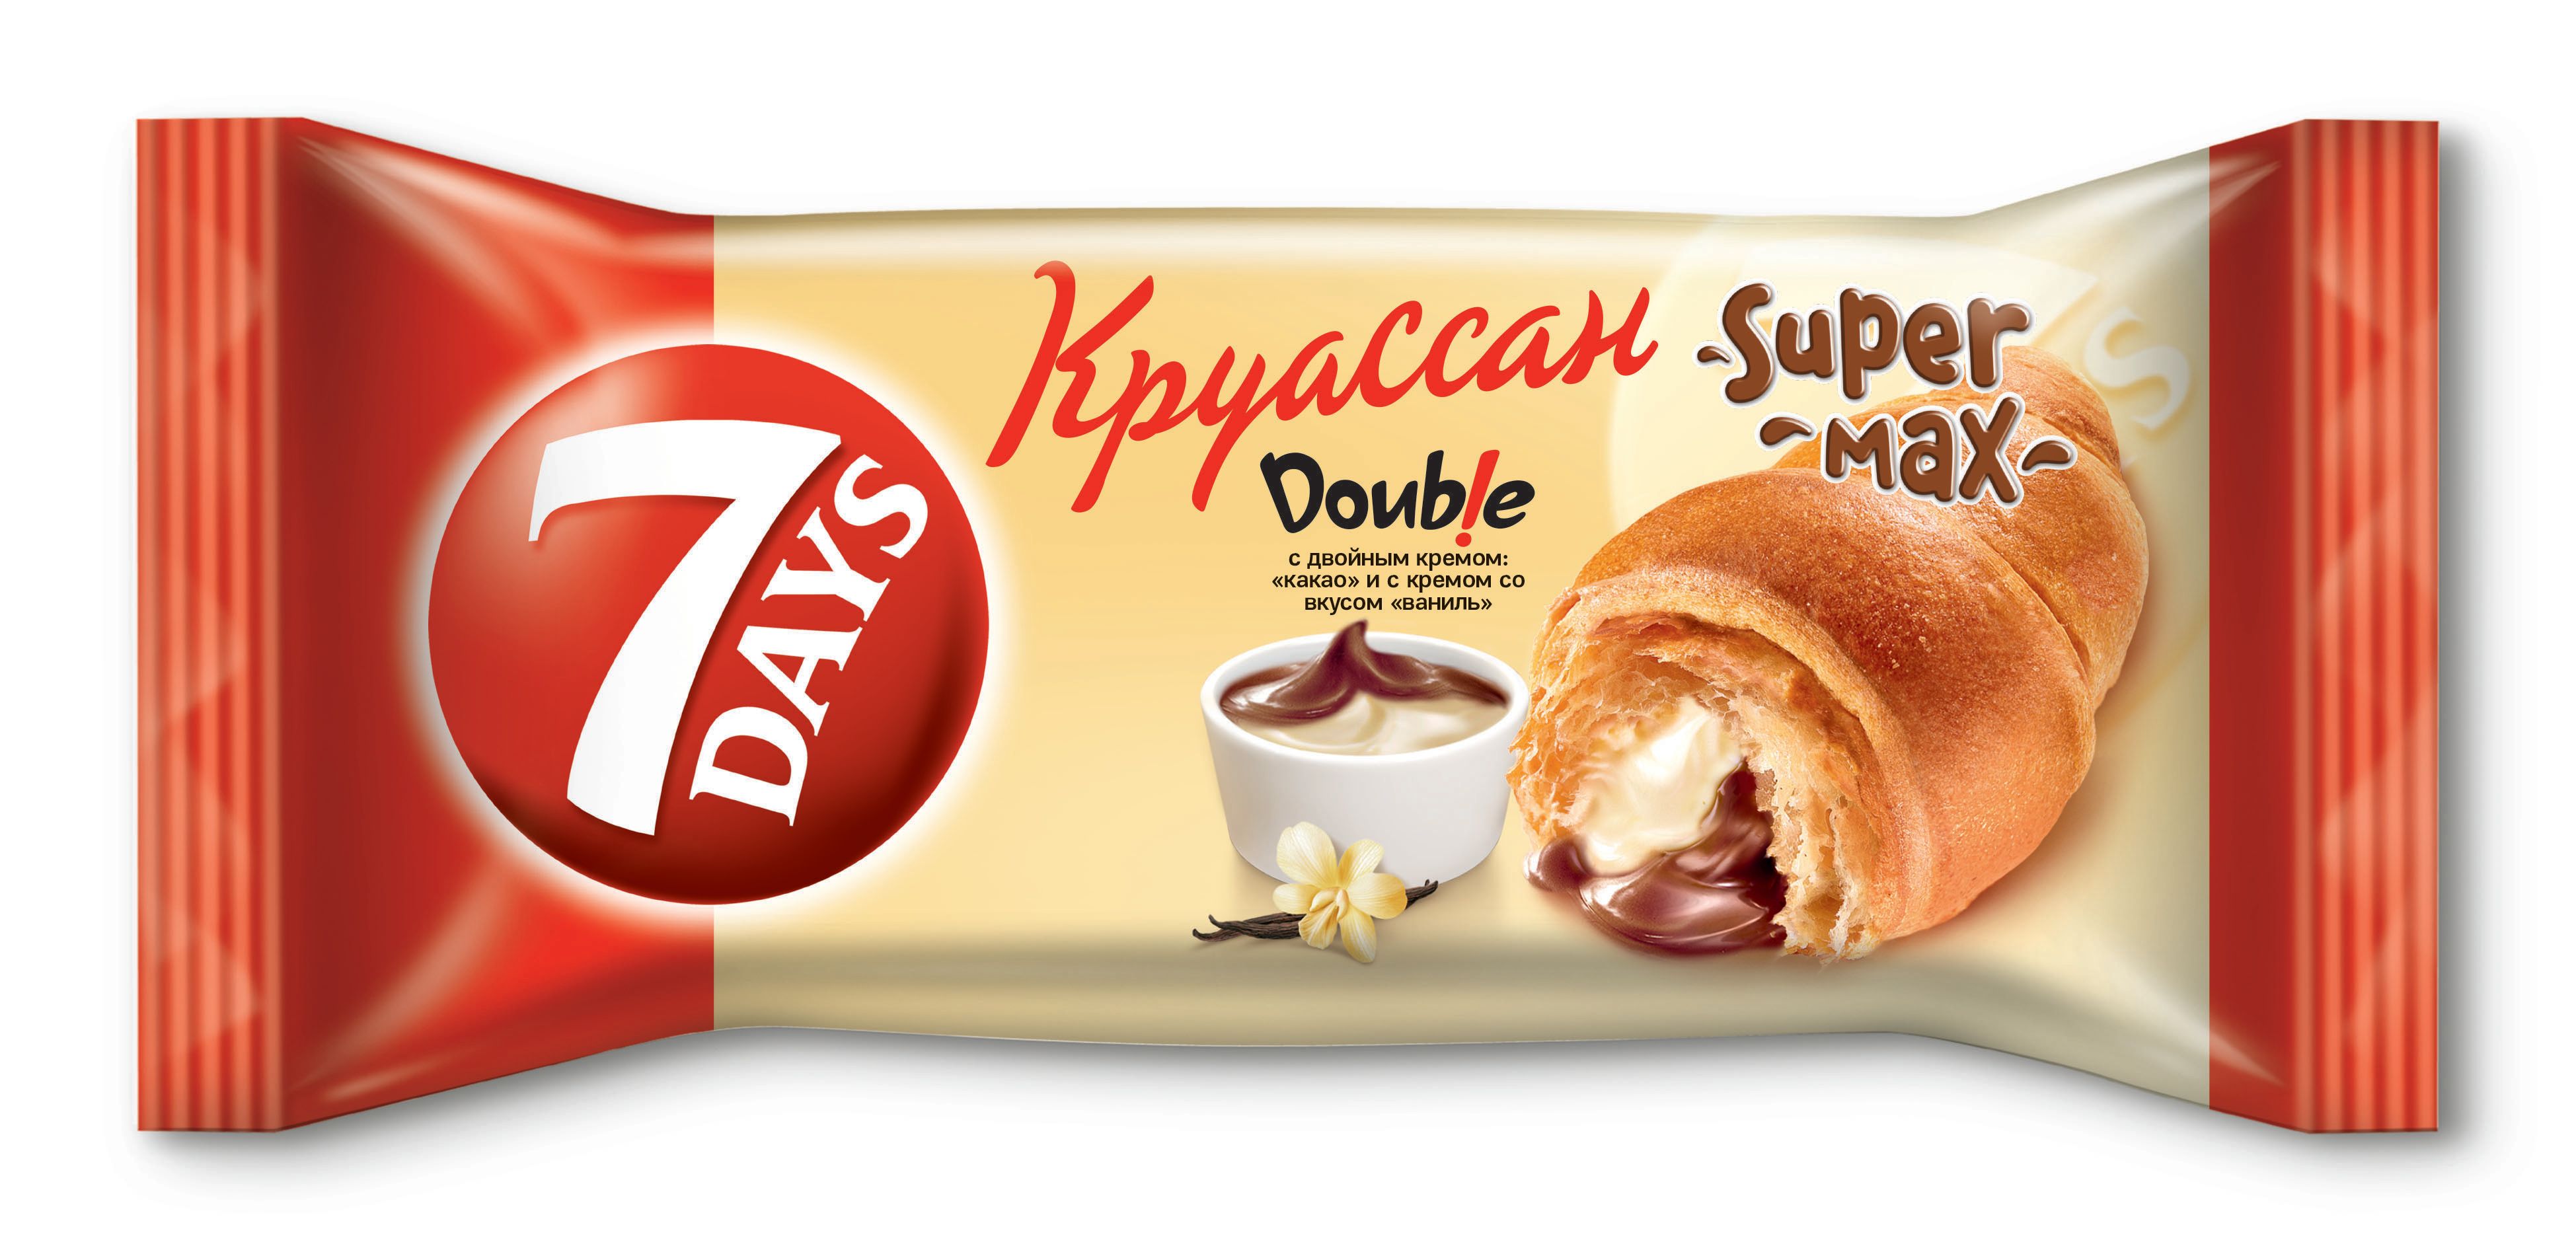 Круассан 7 Days Double крем какао-крем ваниль 110 г